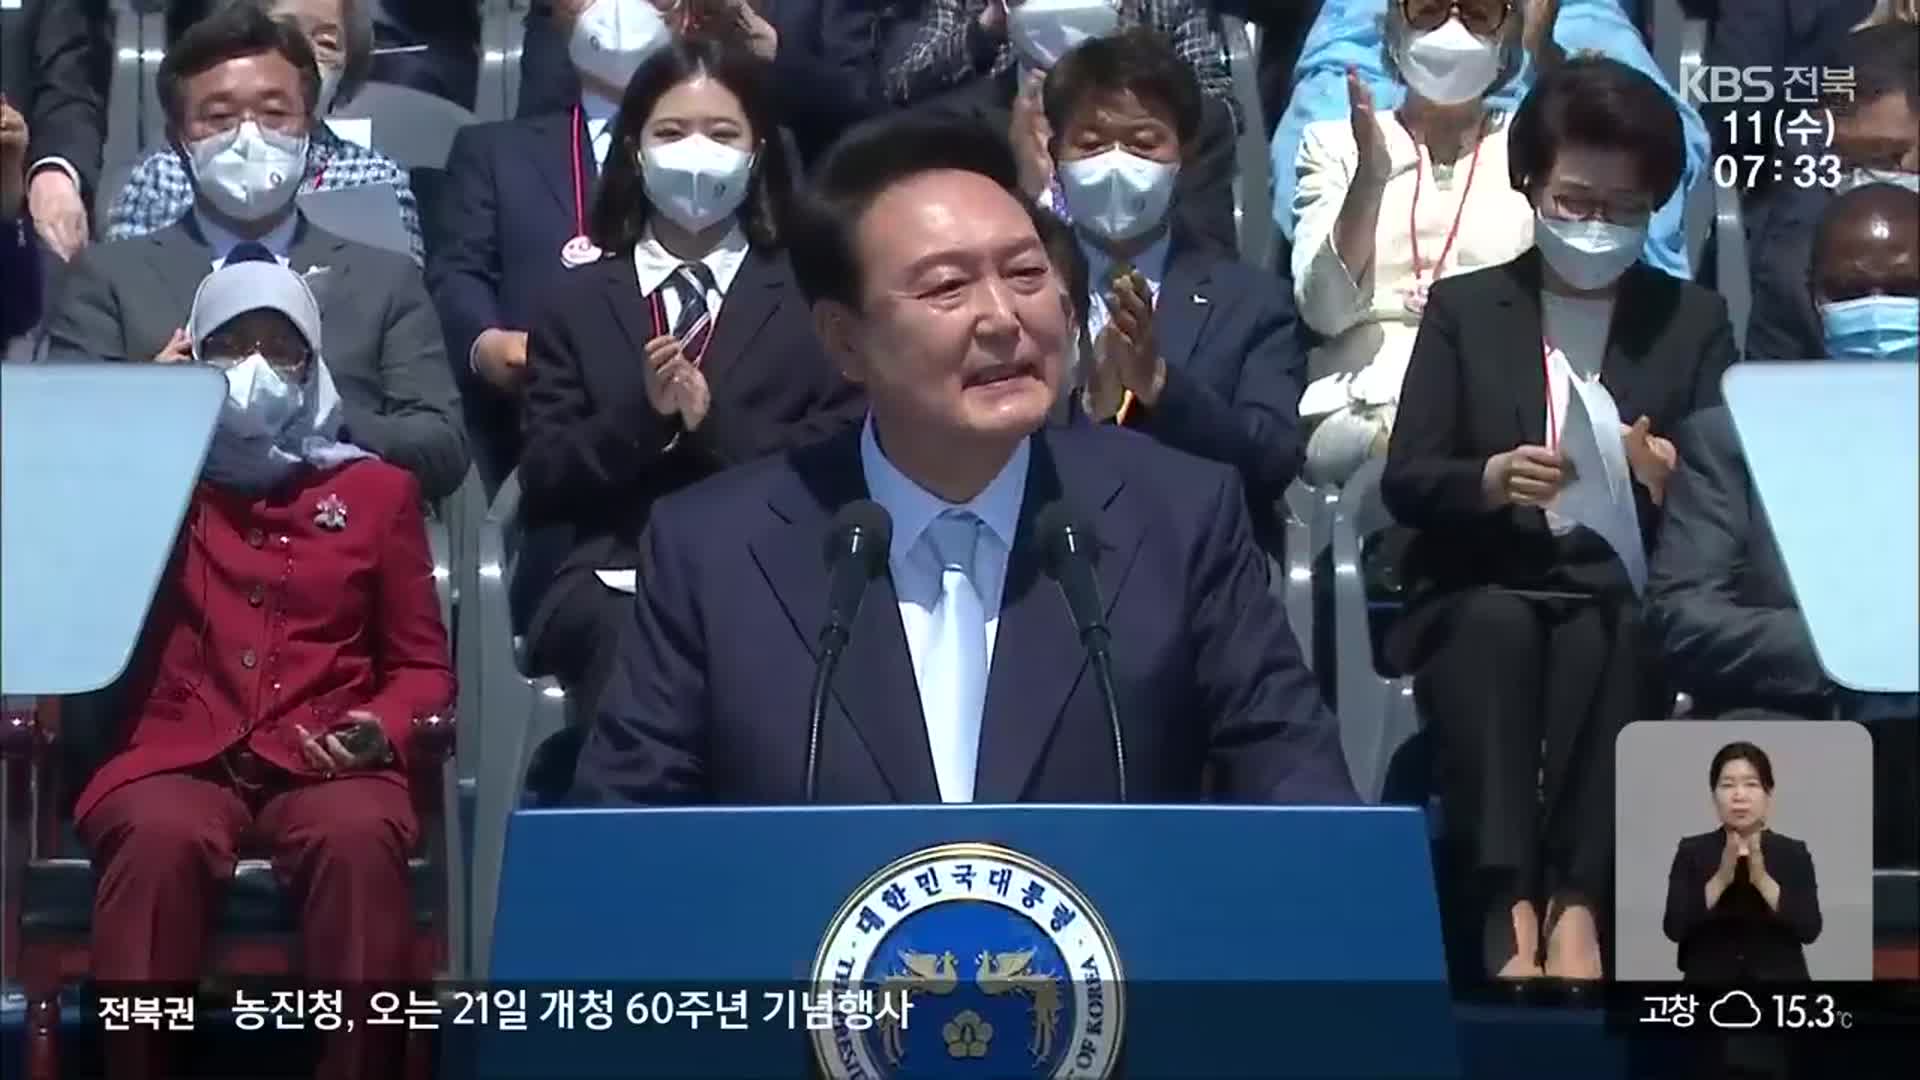 전북도민이 기대하는 윤석열 정부의 모습은?